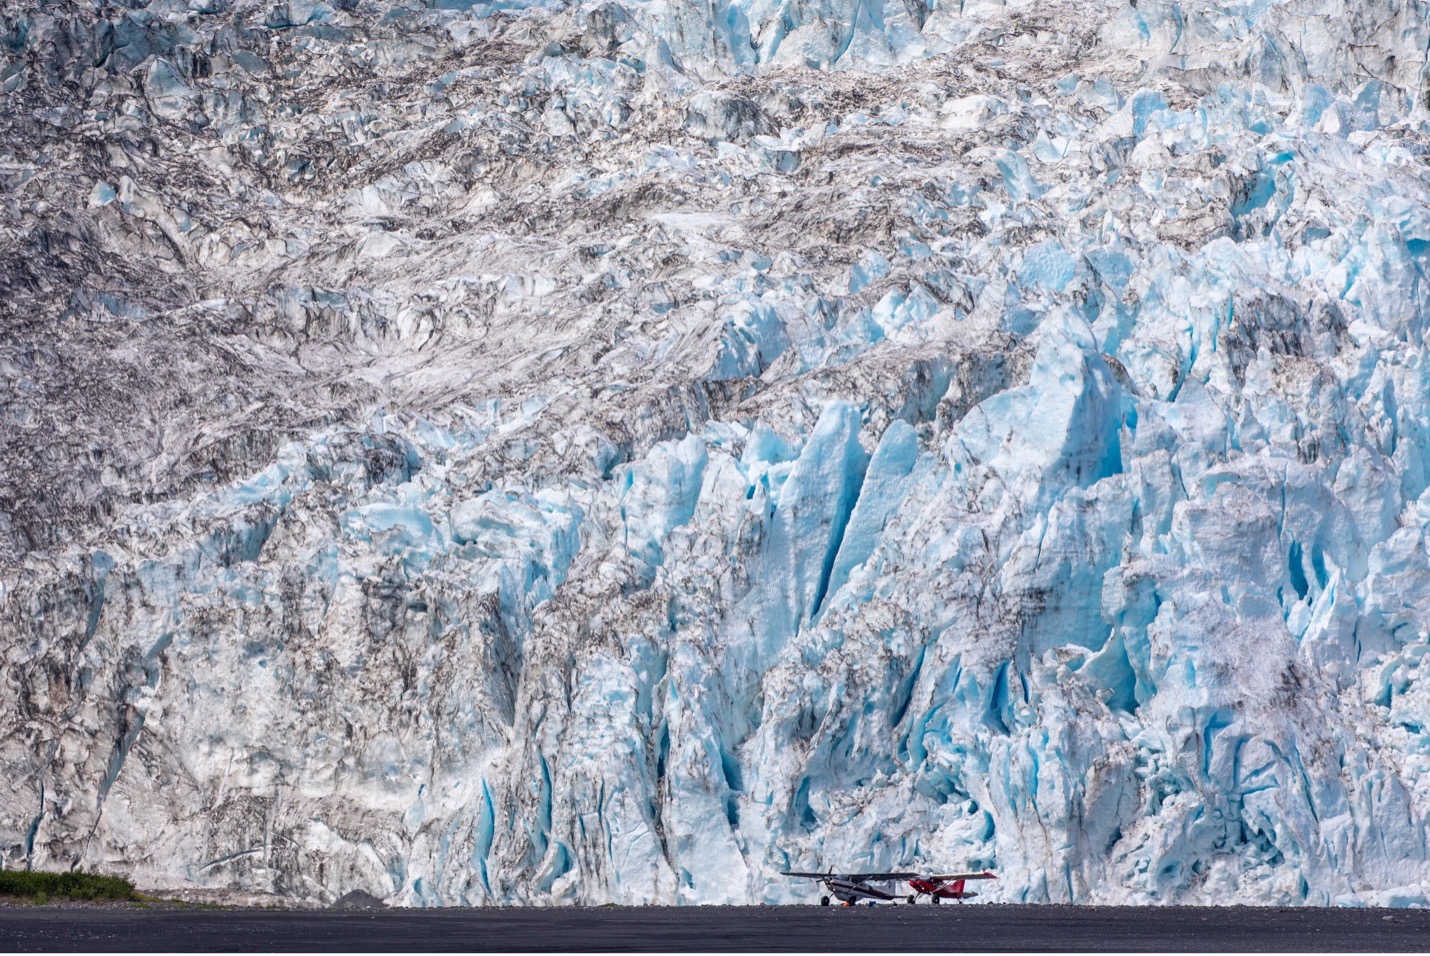 two planes site below a towering glacier